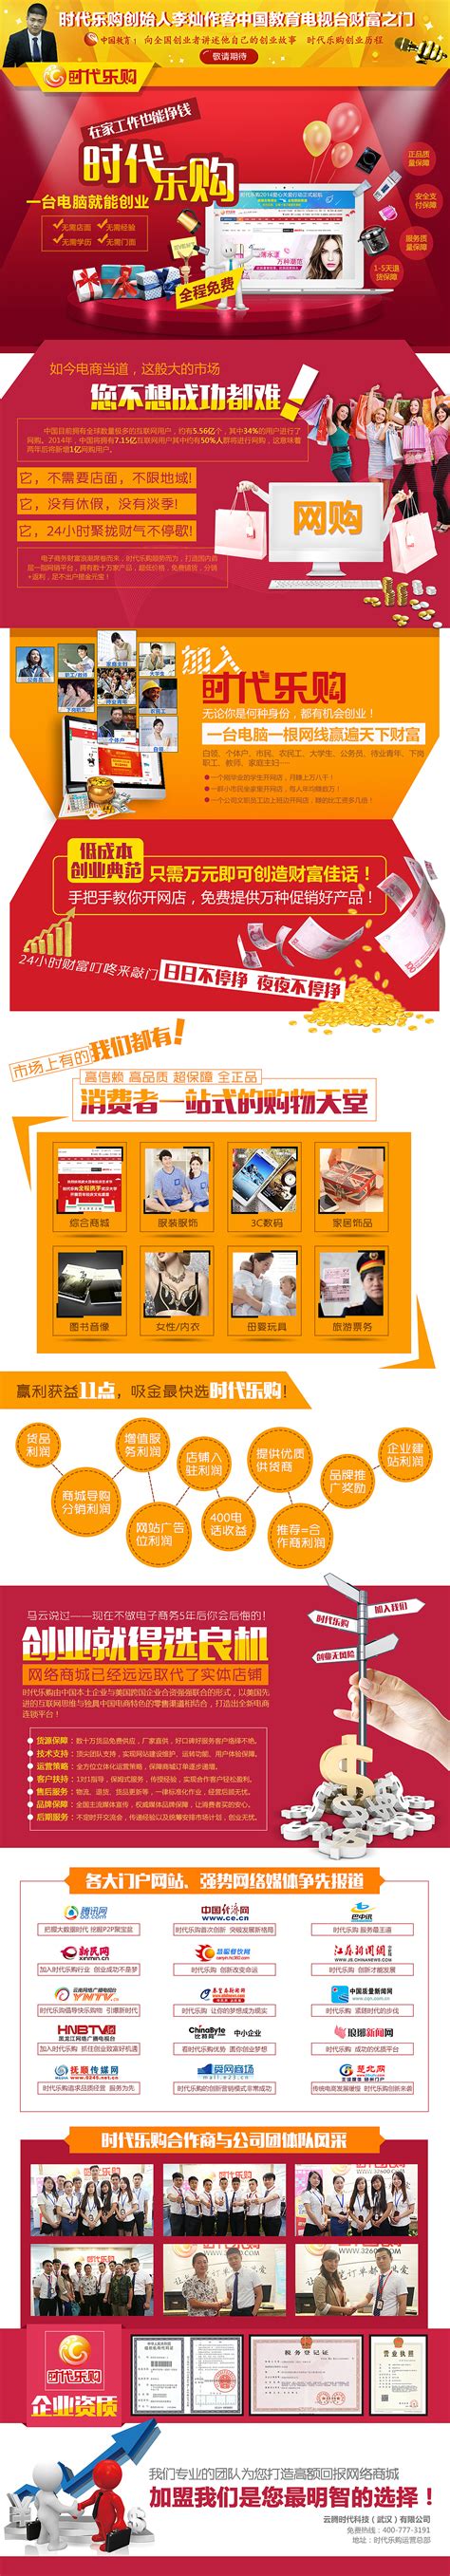 品牌招商网站_素材中国sccnn.com